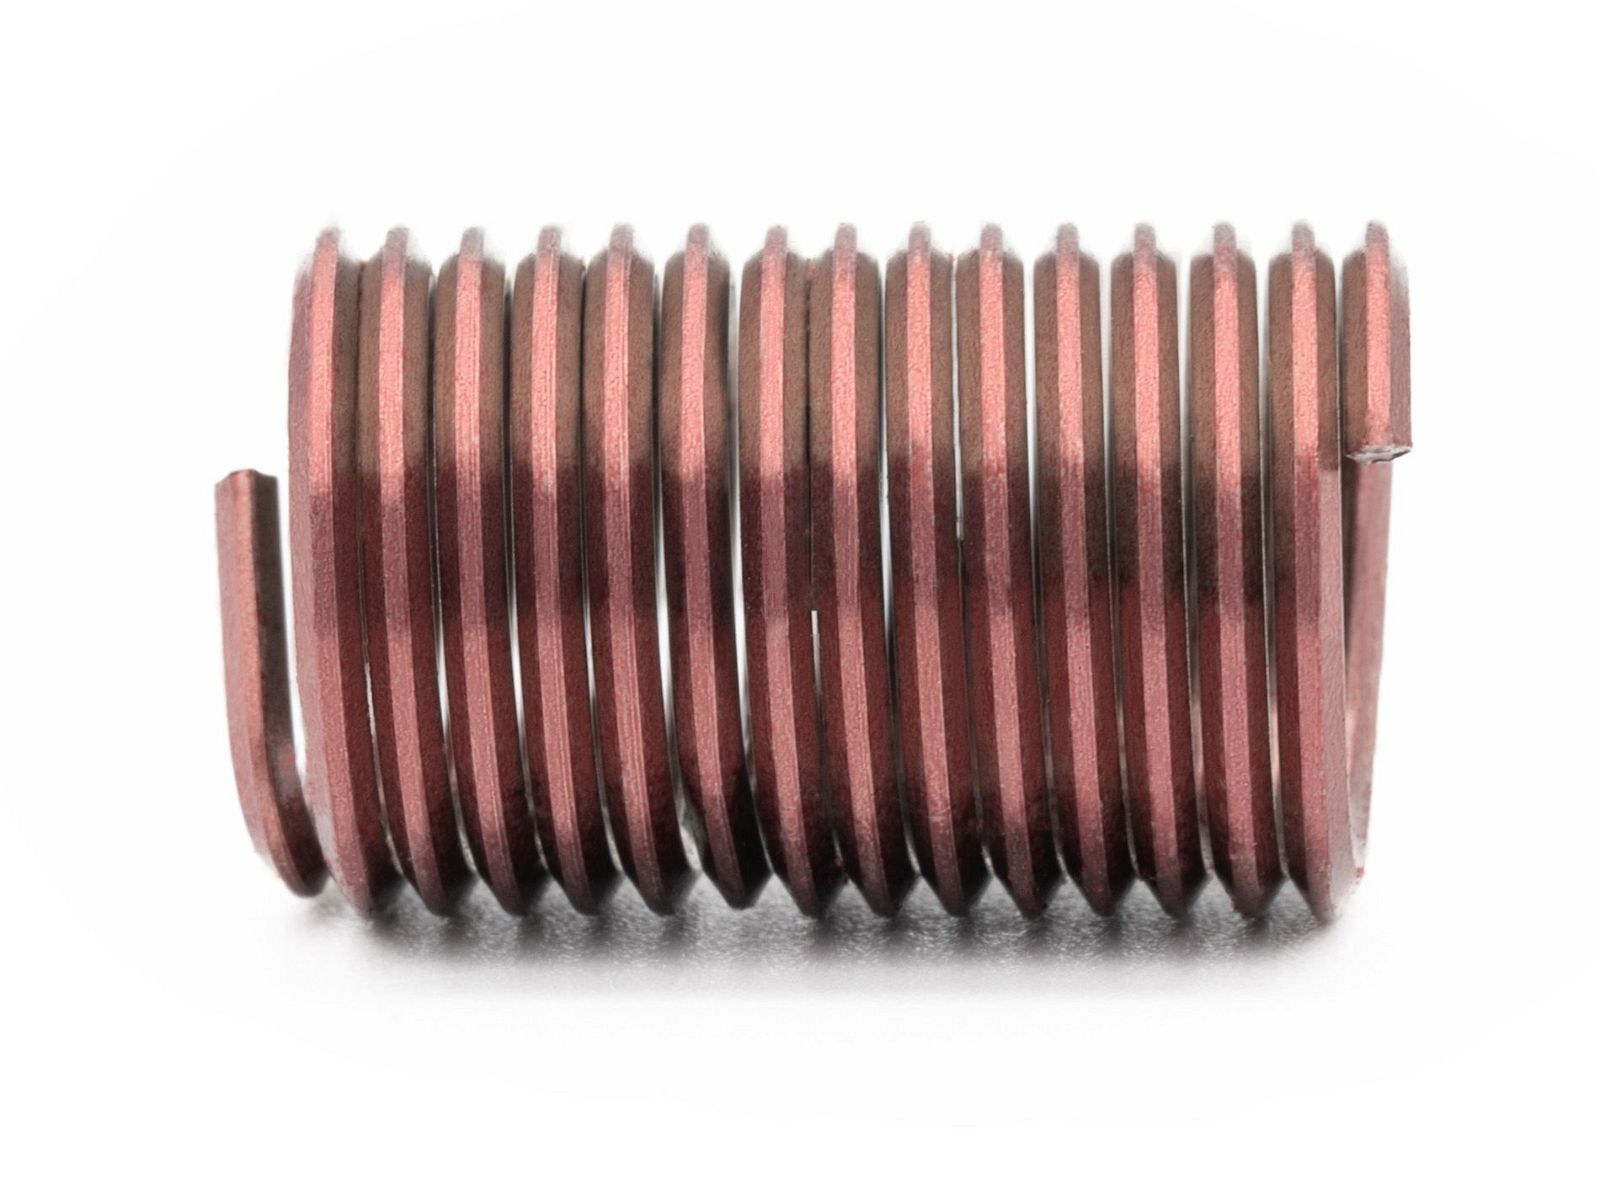 BaerCoil Wire Thread Inserts UNF 1/4 x 28 - 2.5 D (15.88 mm) - screw grip (screw locking) - 100 pcs.